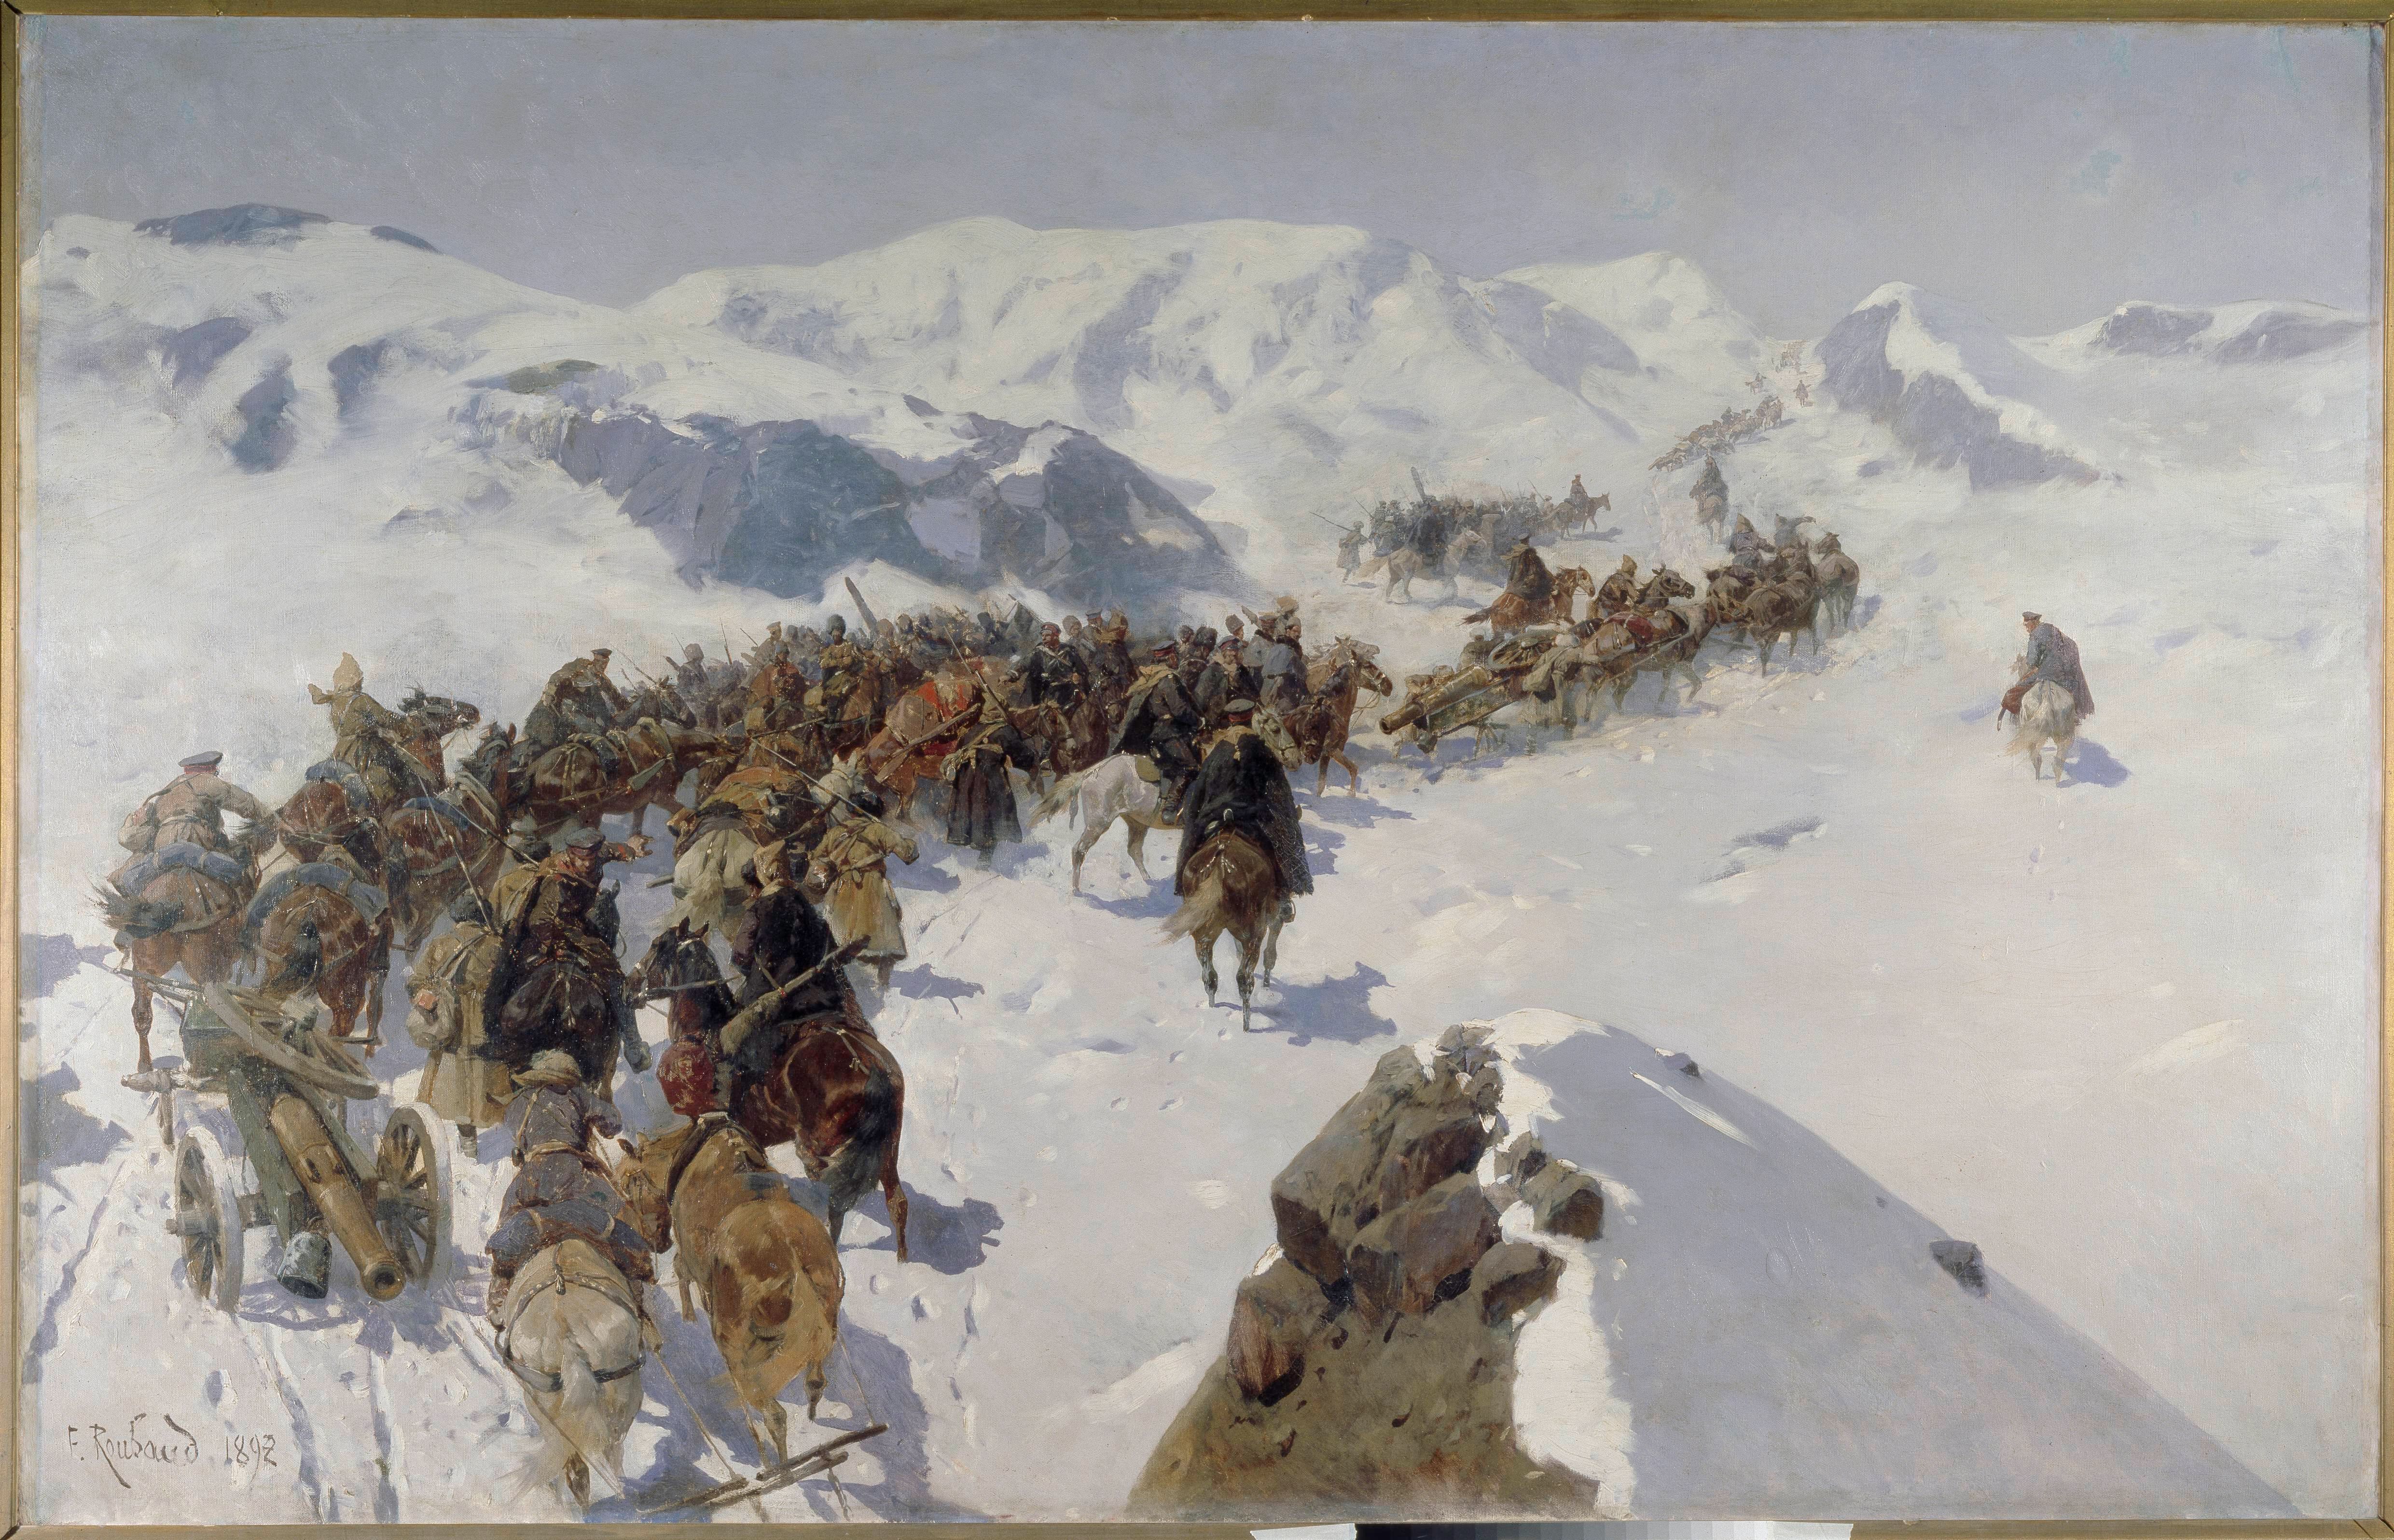 Russisches Reich / Kaukasien 1892 (?). General Argutinsky überschreitet eine Bergkette im Kaukasus. Gemälde, 1892, von Franz Roubaud (18561928). Öl auf Leinwand, 126 × 199 cm. Makhachkala, Art Museum.